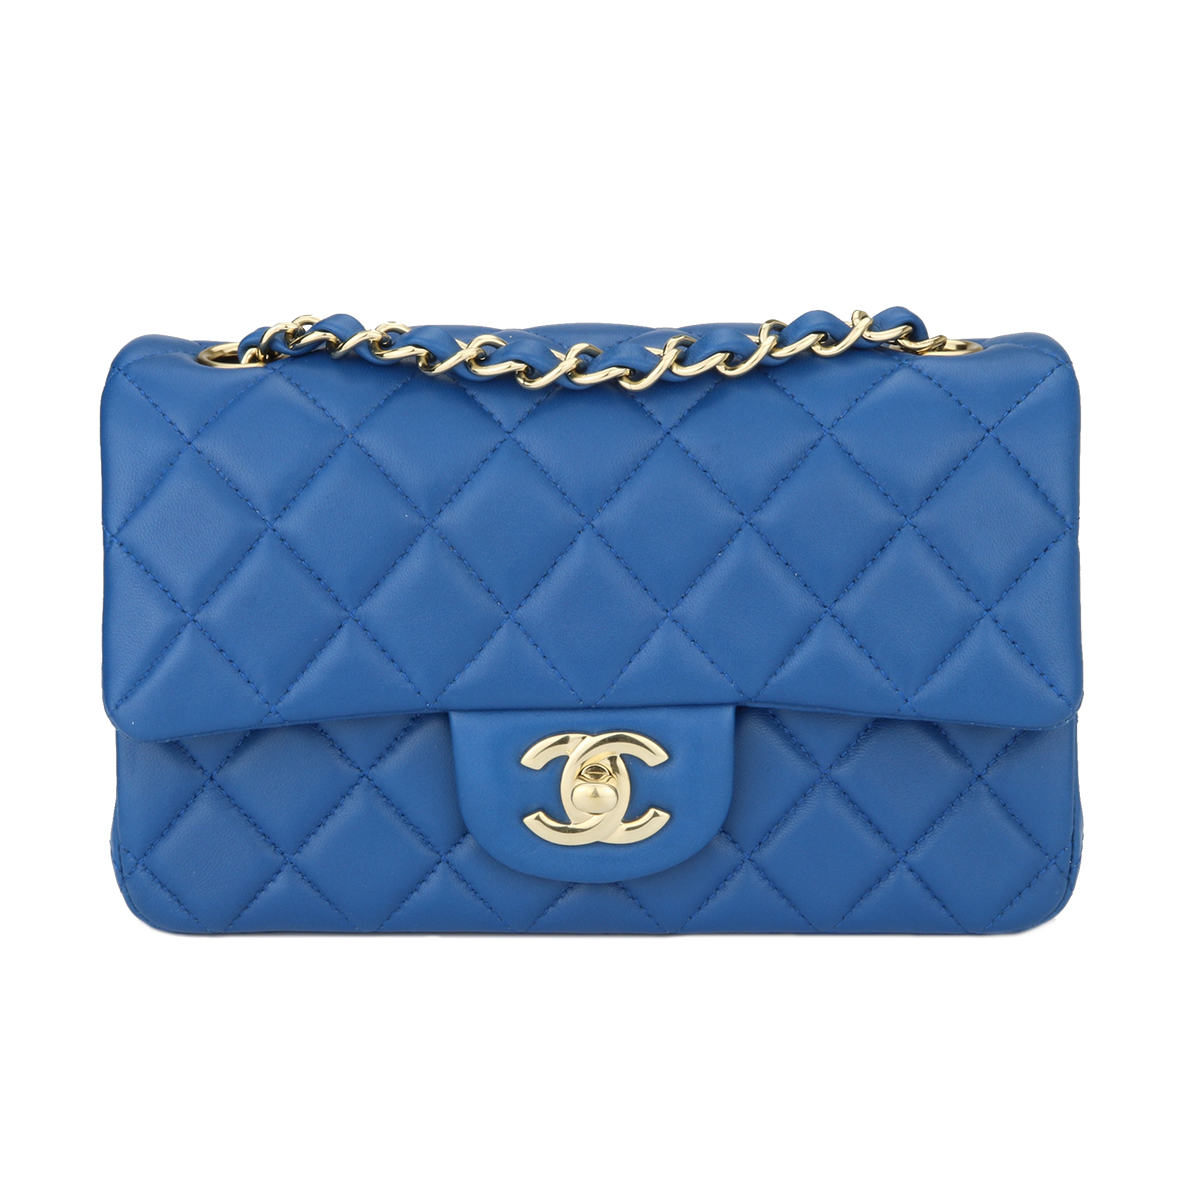 Chanel 22S Heart clutch bag blue lambskin